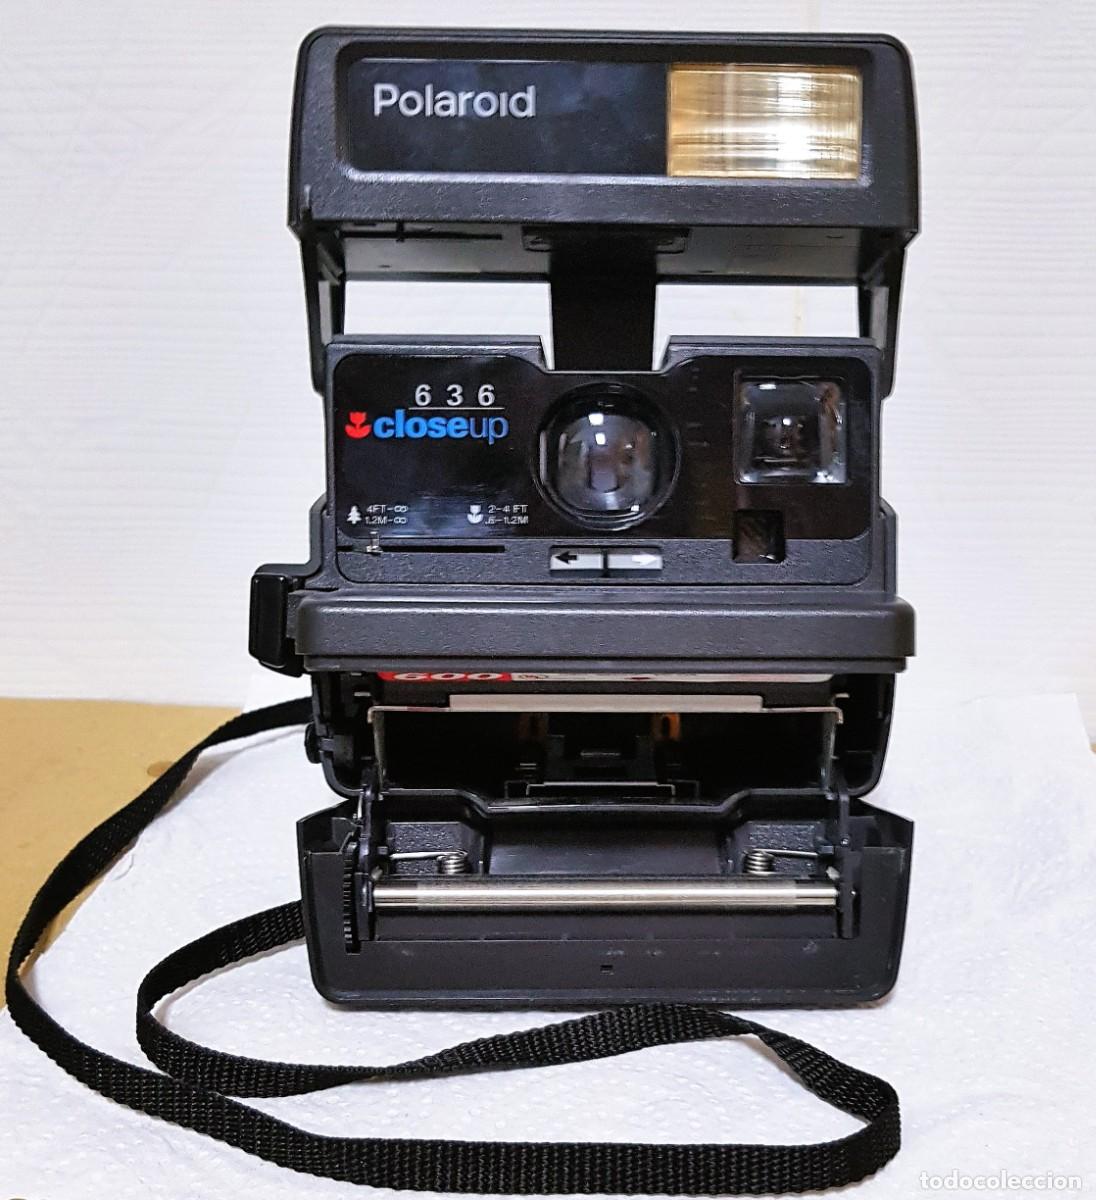 販サイト Polaroid ポラロイド 636 closeup ４台セット | www